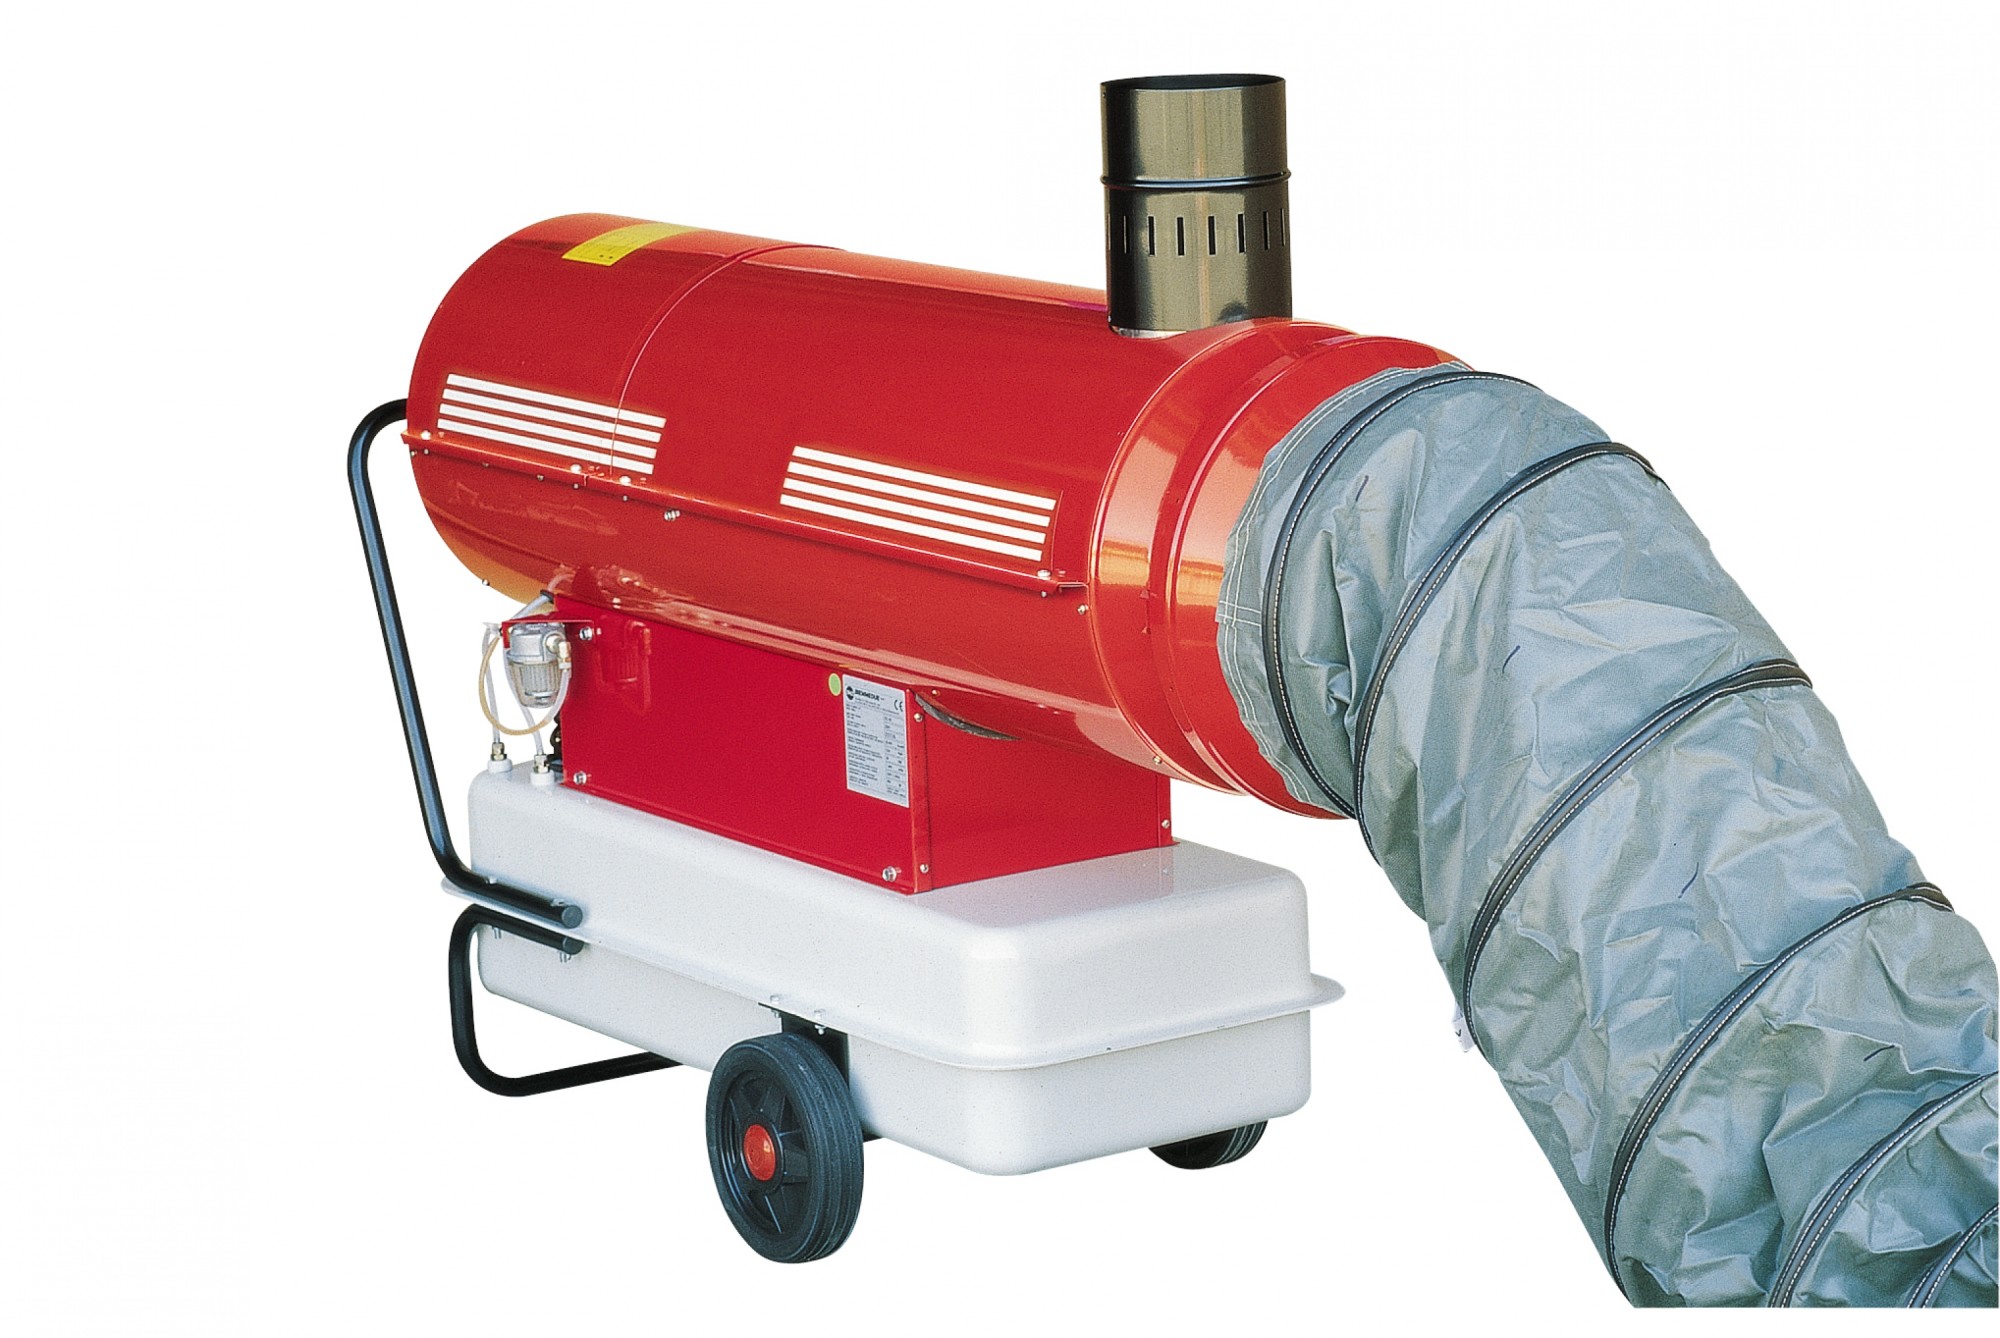 Sistema di riscaldamento ad aria calda. Il generatore è posto all'esterno  della tenda e la guain flessibile viene inserita nella manichetta di colleg